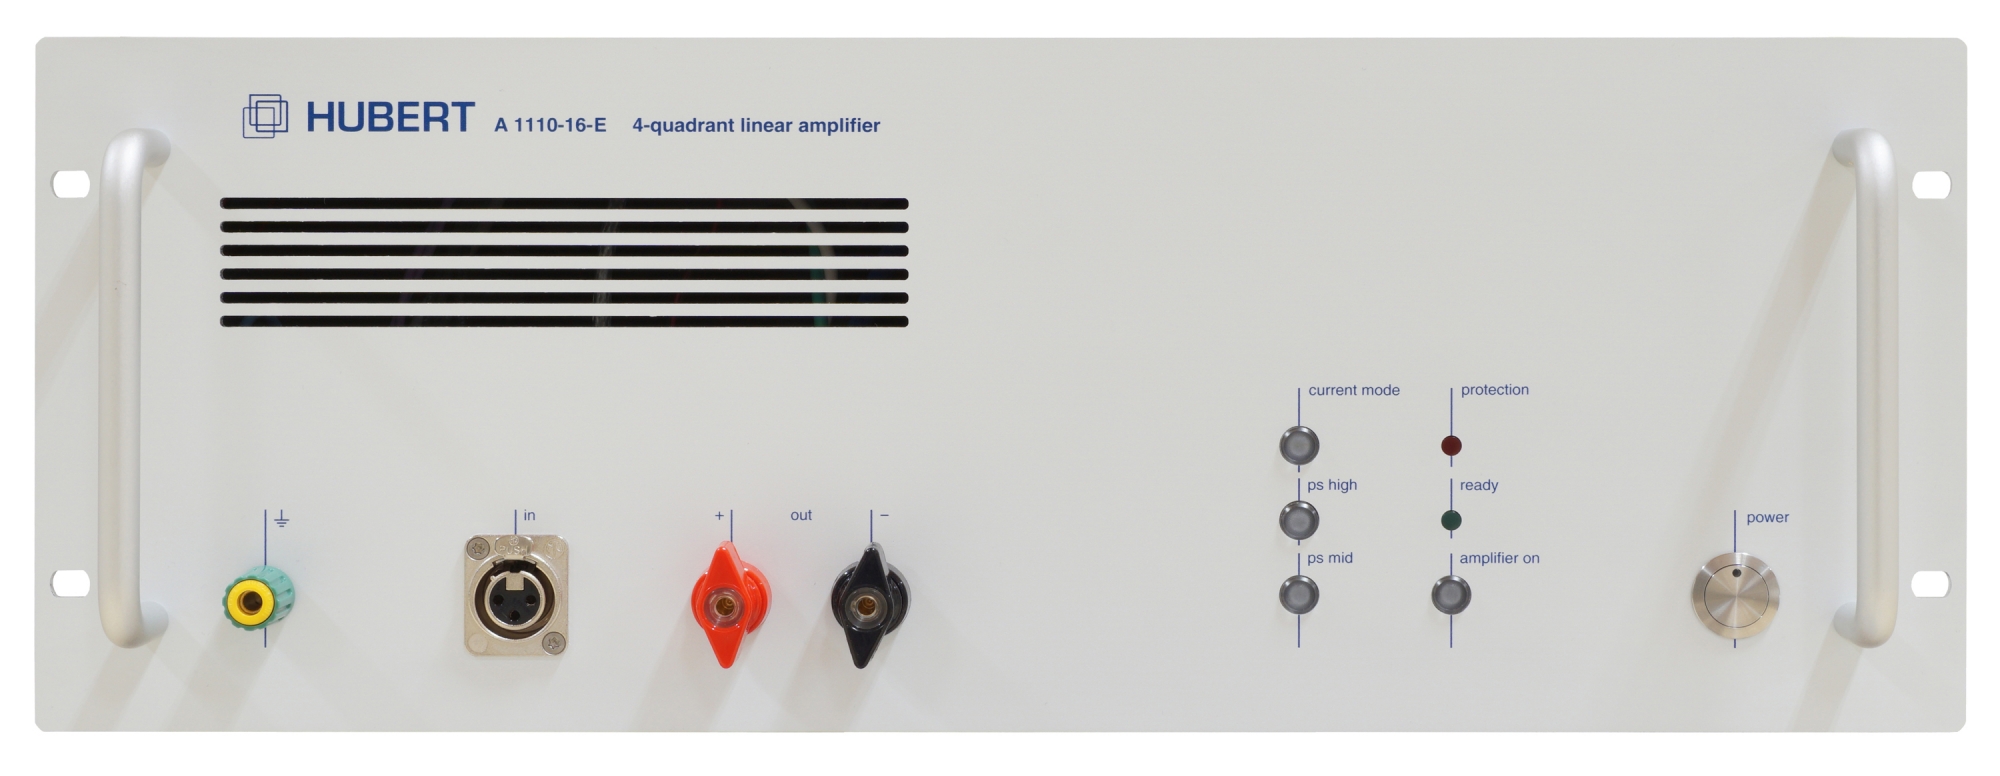 HUBERT A 1110-16-E linear amplifier